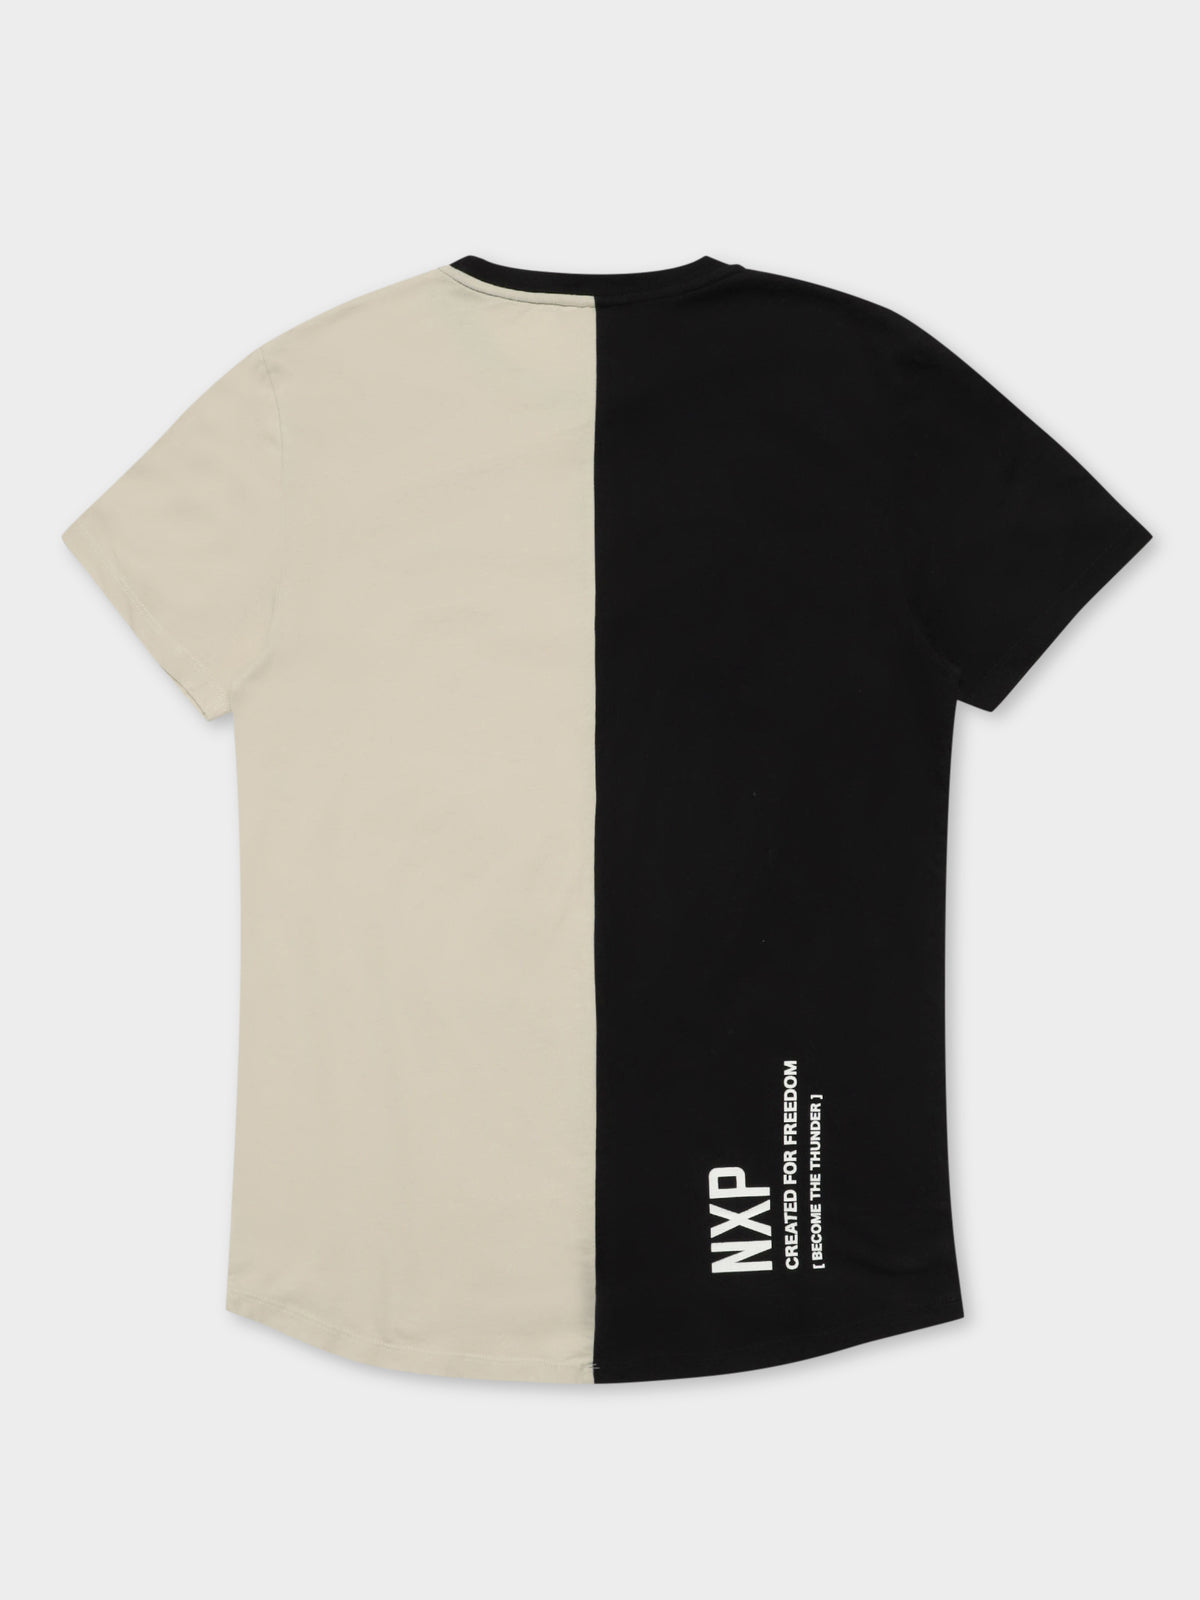 Interlagos T-Shirt in Black &amp; Beige